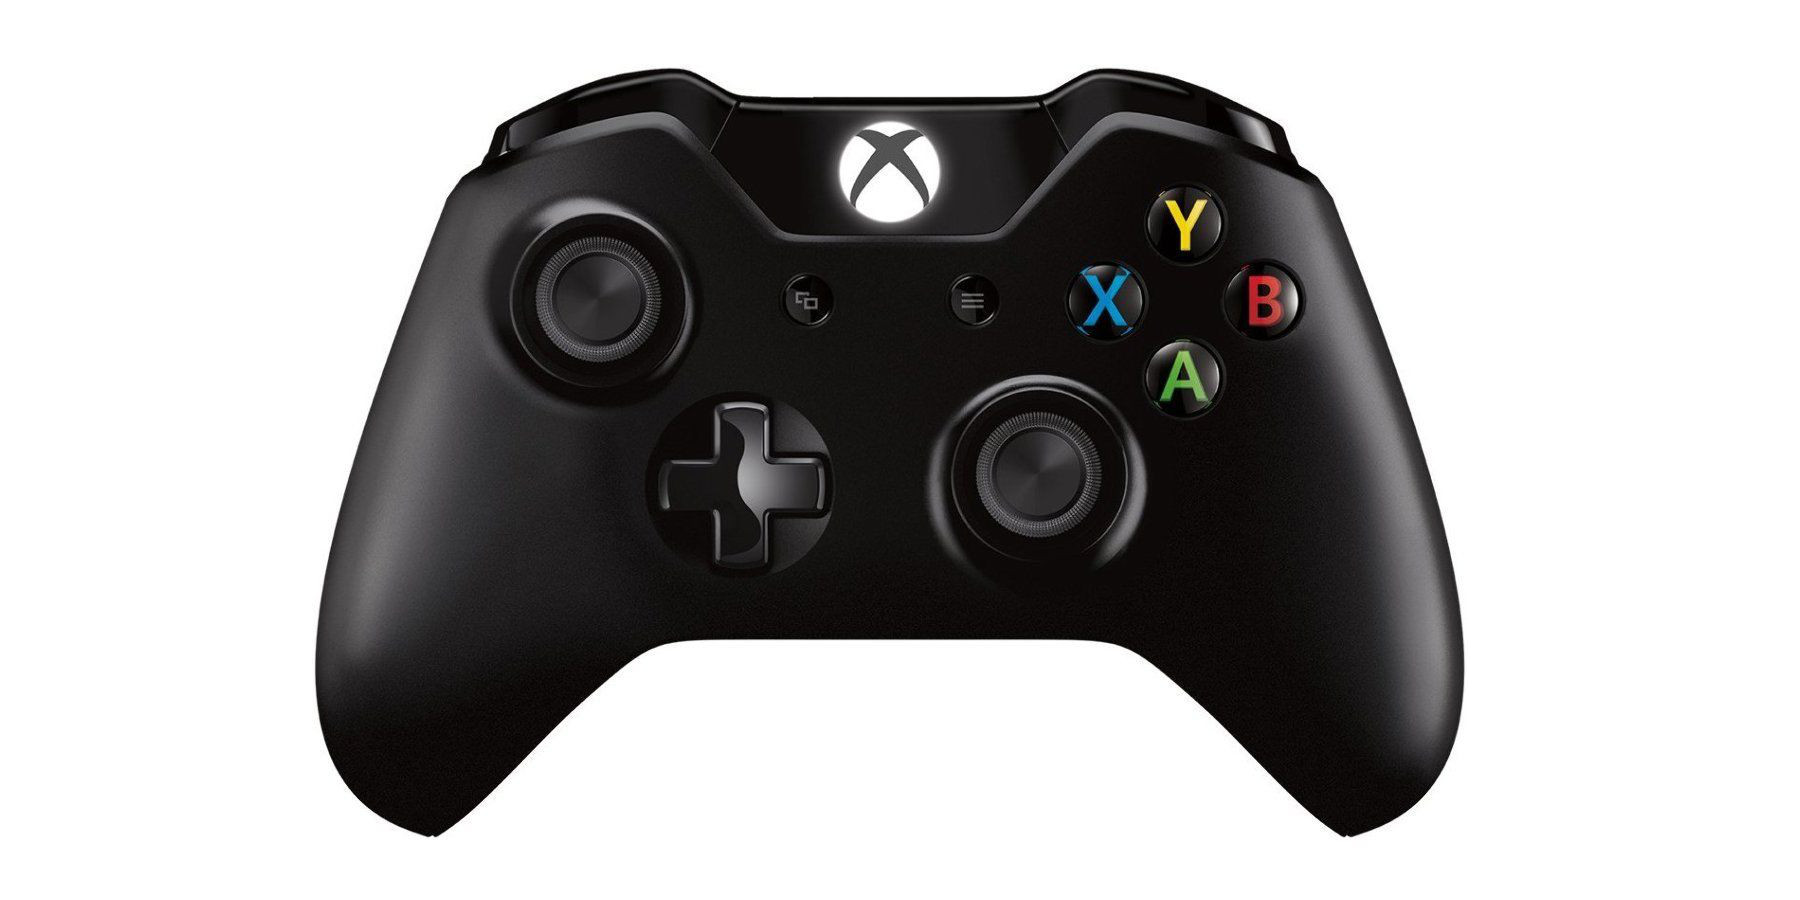 Джойстик вверх. Геймпад Xbox one. Игровая приставка Microsoft Xbox one x: Project Scorpio Edition. Xbox 1 Gamepad. Геймпад Microsoft черный + PC адаптер.